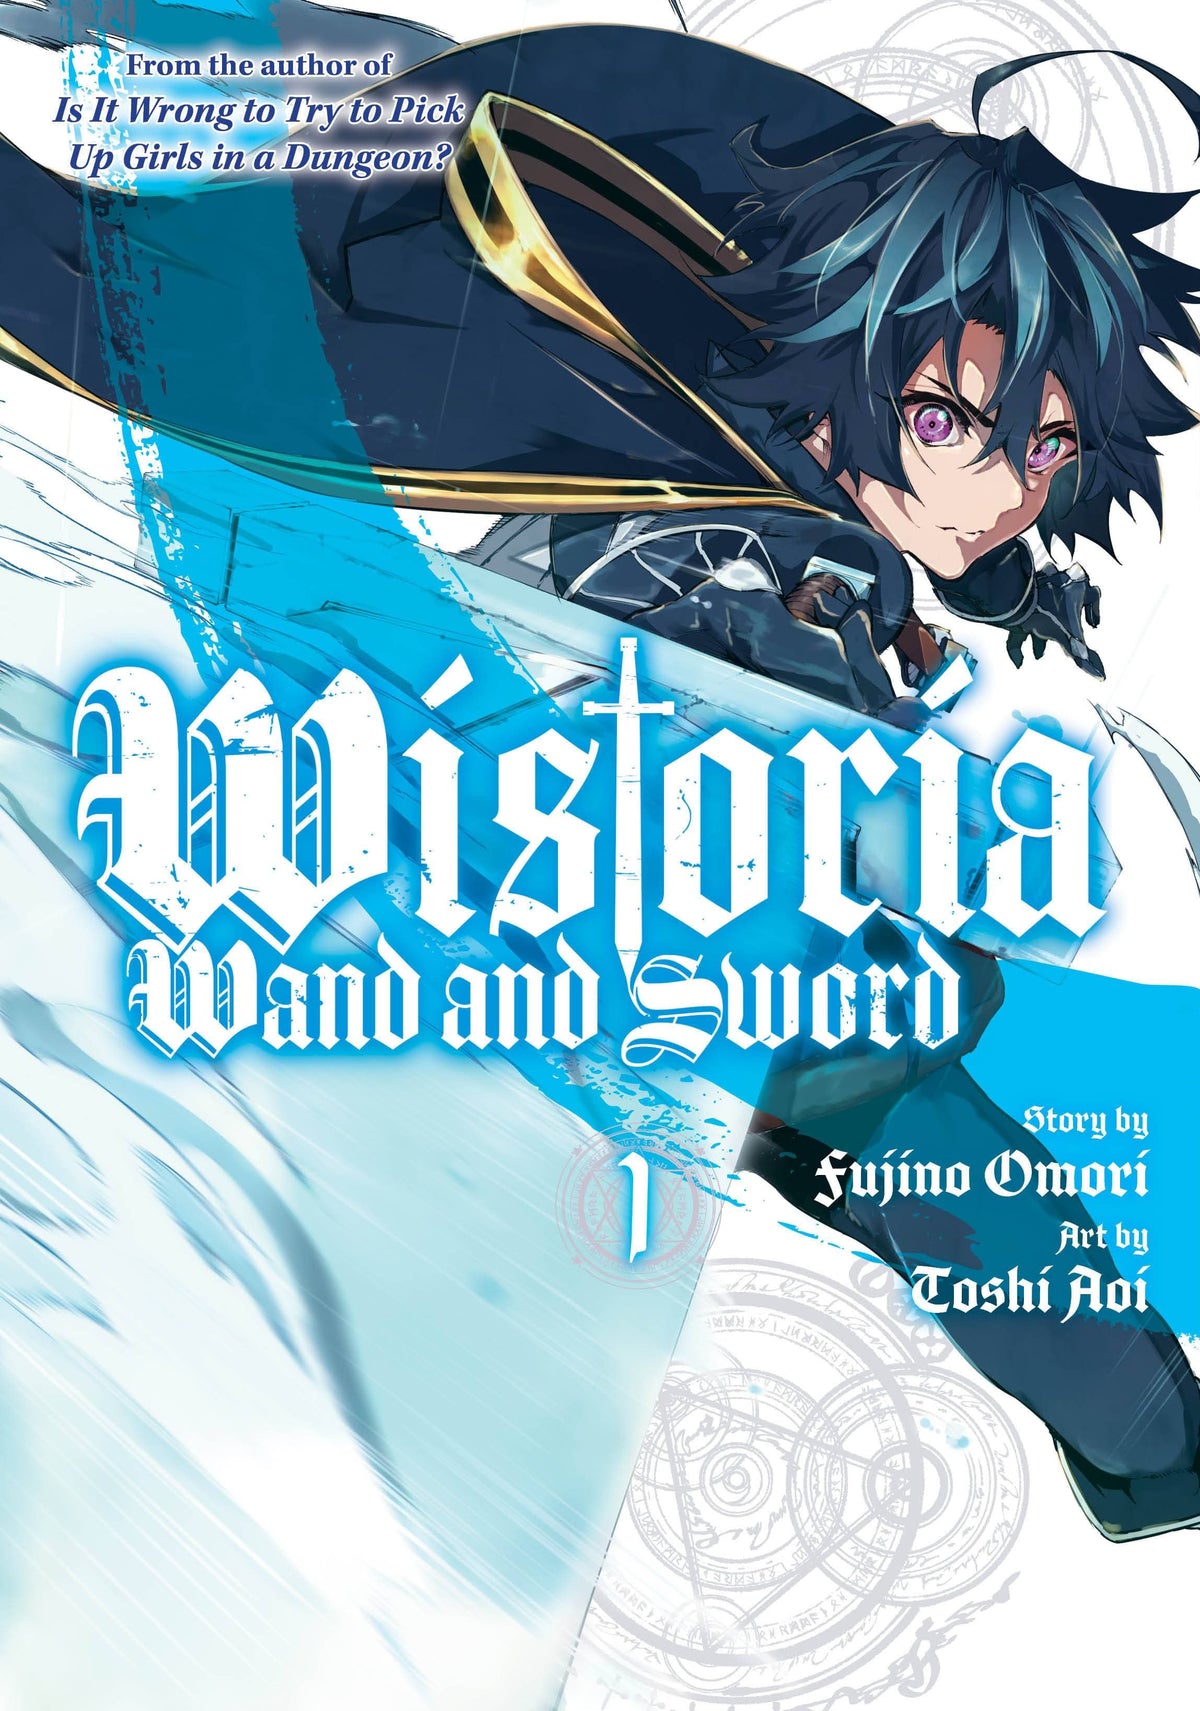 WISTORIA WAND & SWORD GN VOL 01 - Third Eye